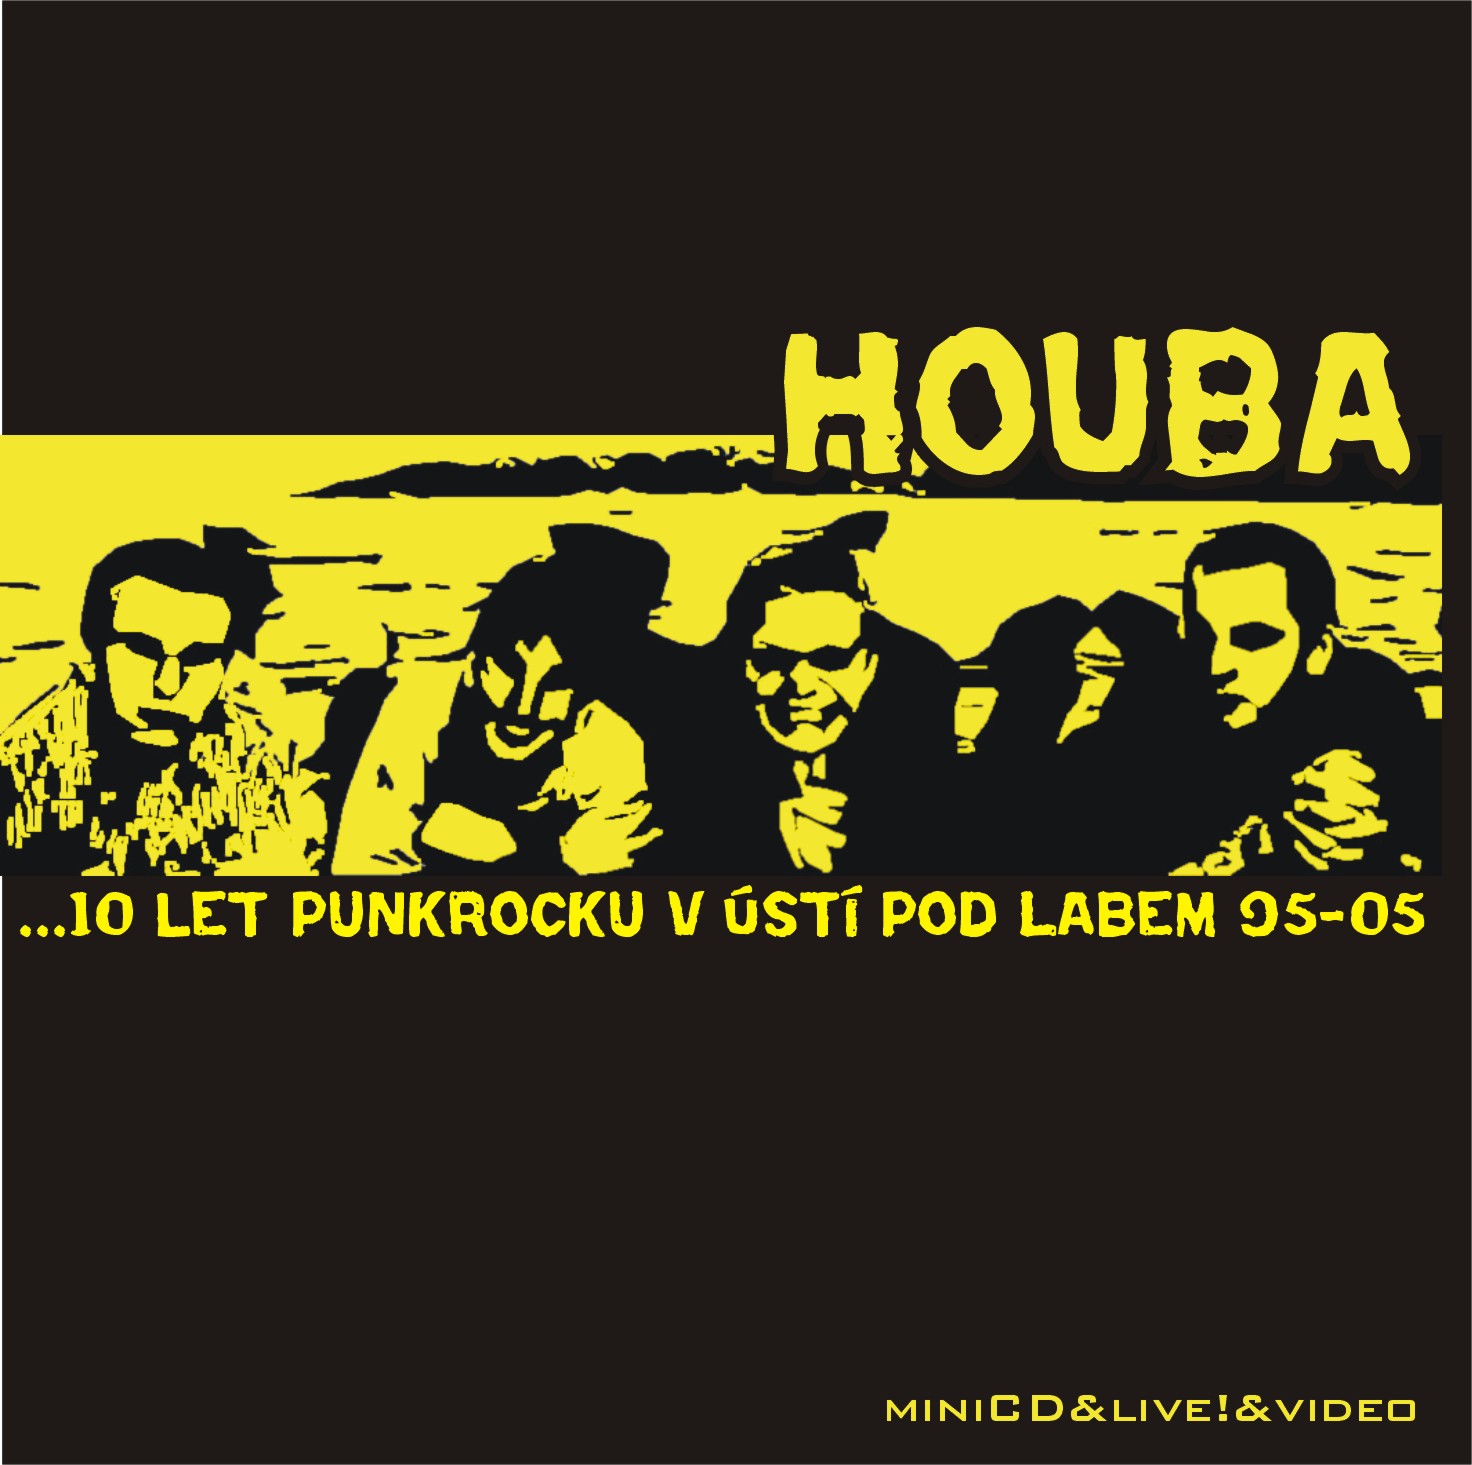 HOUBA - 10 let punkrocku ... (PHR, 2005)